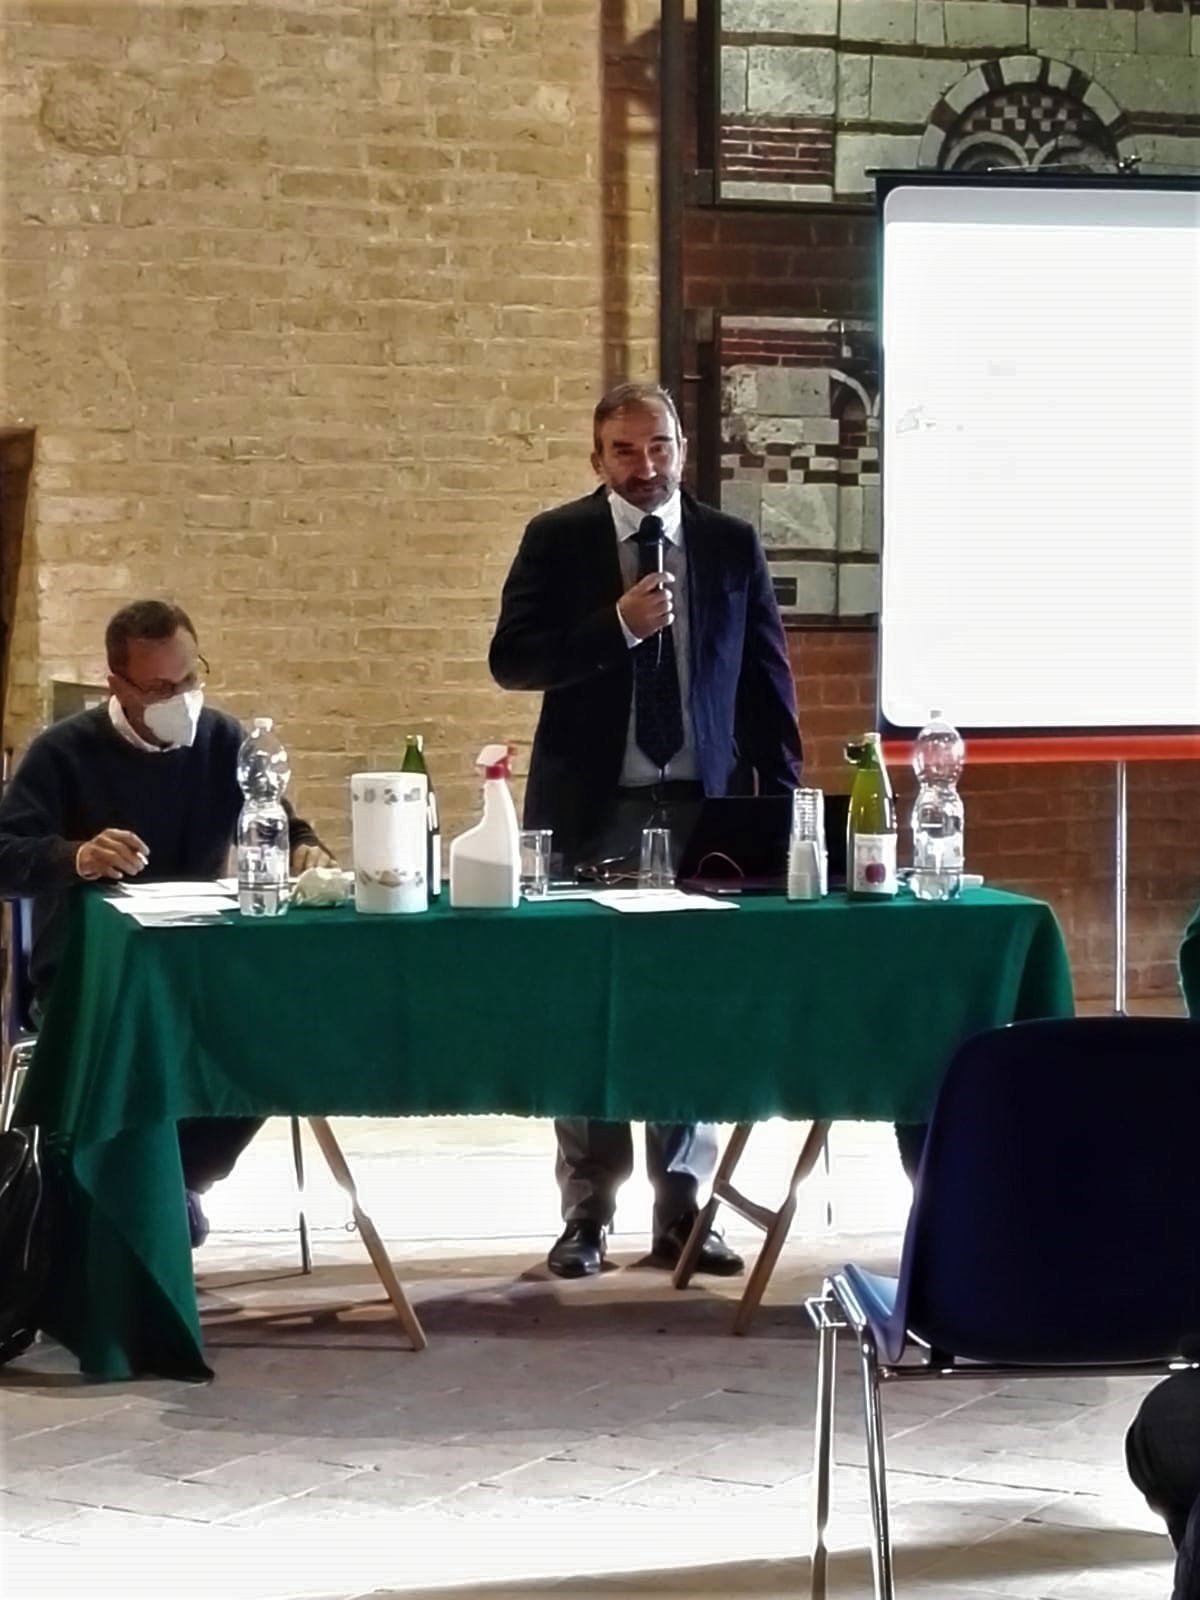 Relazione di Marco Devecchi, Membro del Consiglio di indirizzo della Fondazione Cassa di Risparmio di Asti, su "Il ruolo delle Istituzioni per la valorizzazione del Patrimonio".